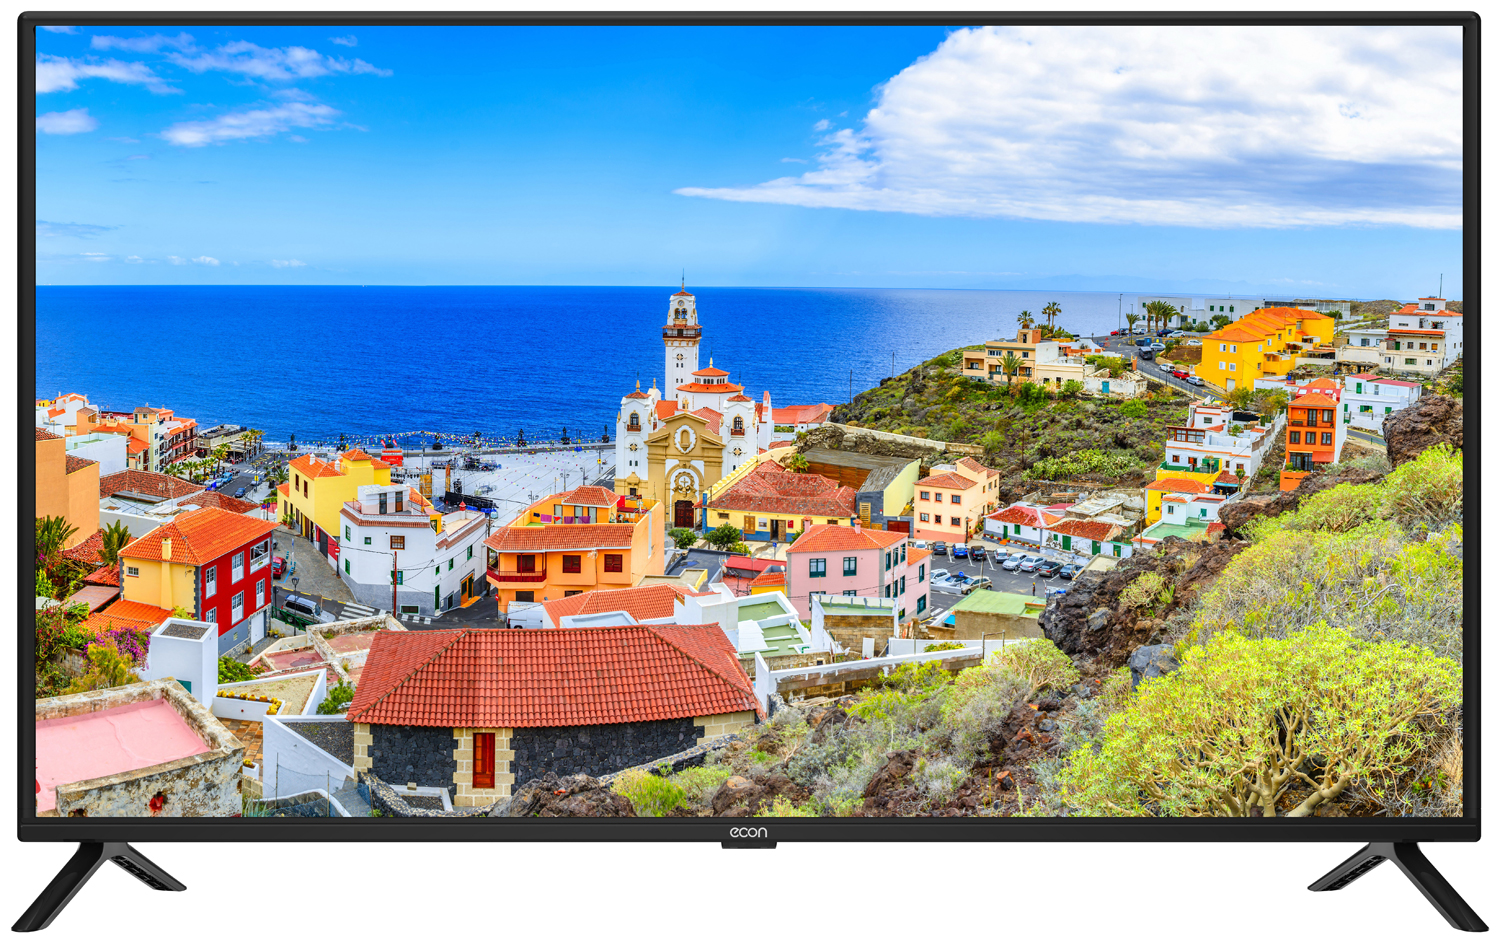 Картинка Телевизор ECON EX-40FT003B по разумной цене купить в интернет магазине mall.su